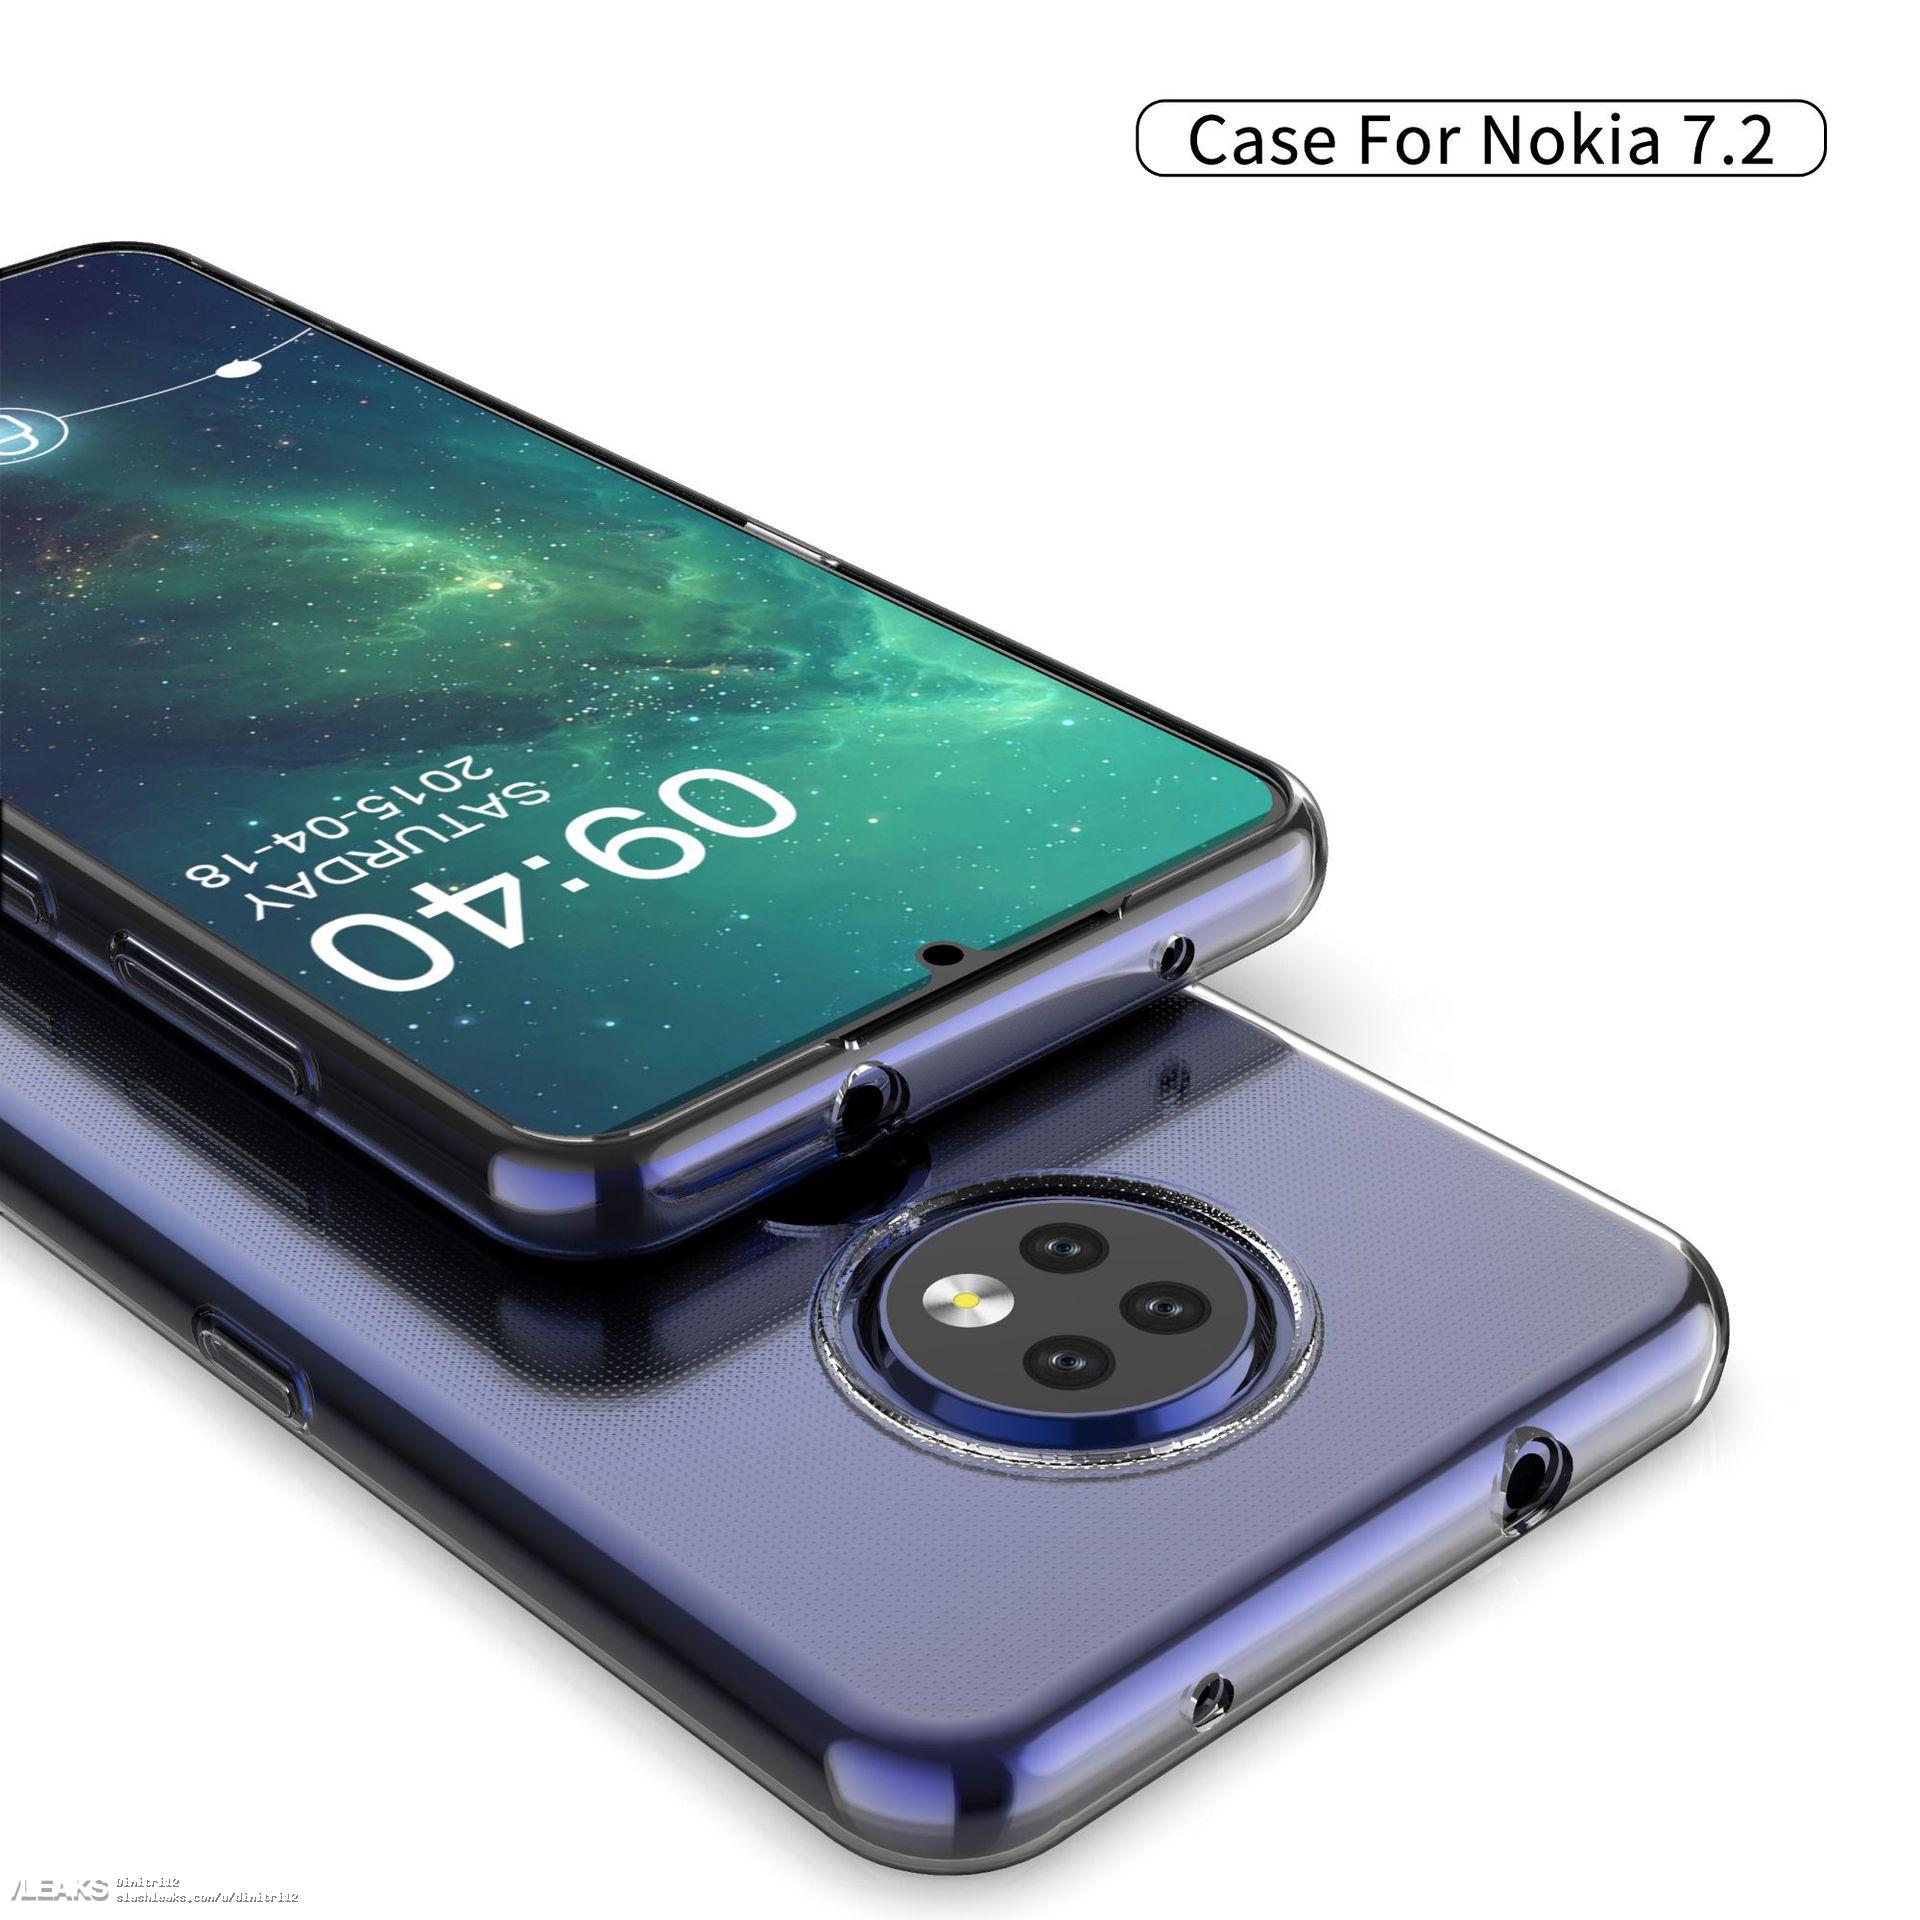 Nokia 7.2 si mette in mostra grazie alle prime cover: tripla fotocamera, cerchi a profusione e jack audio!